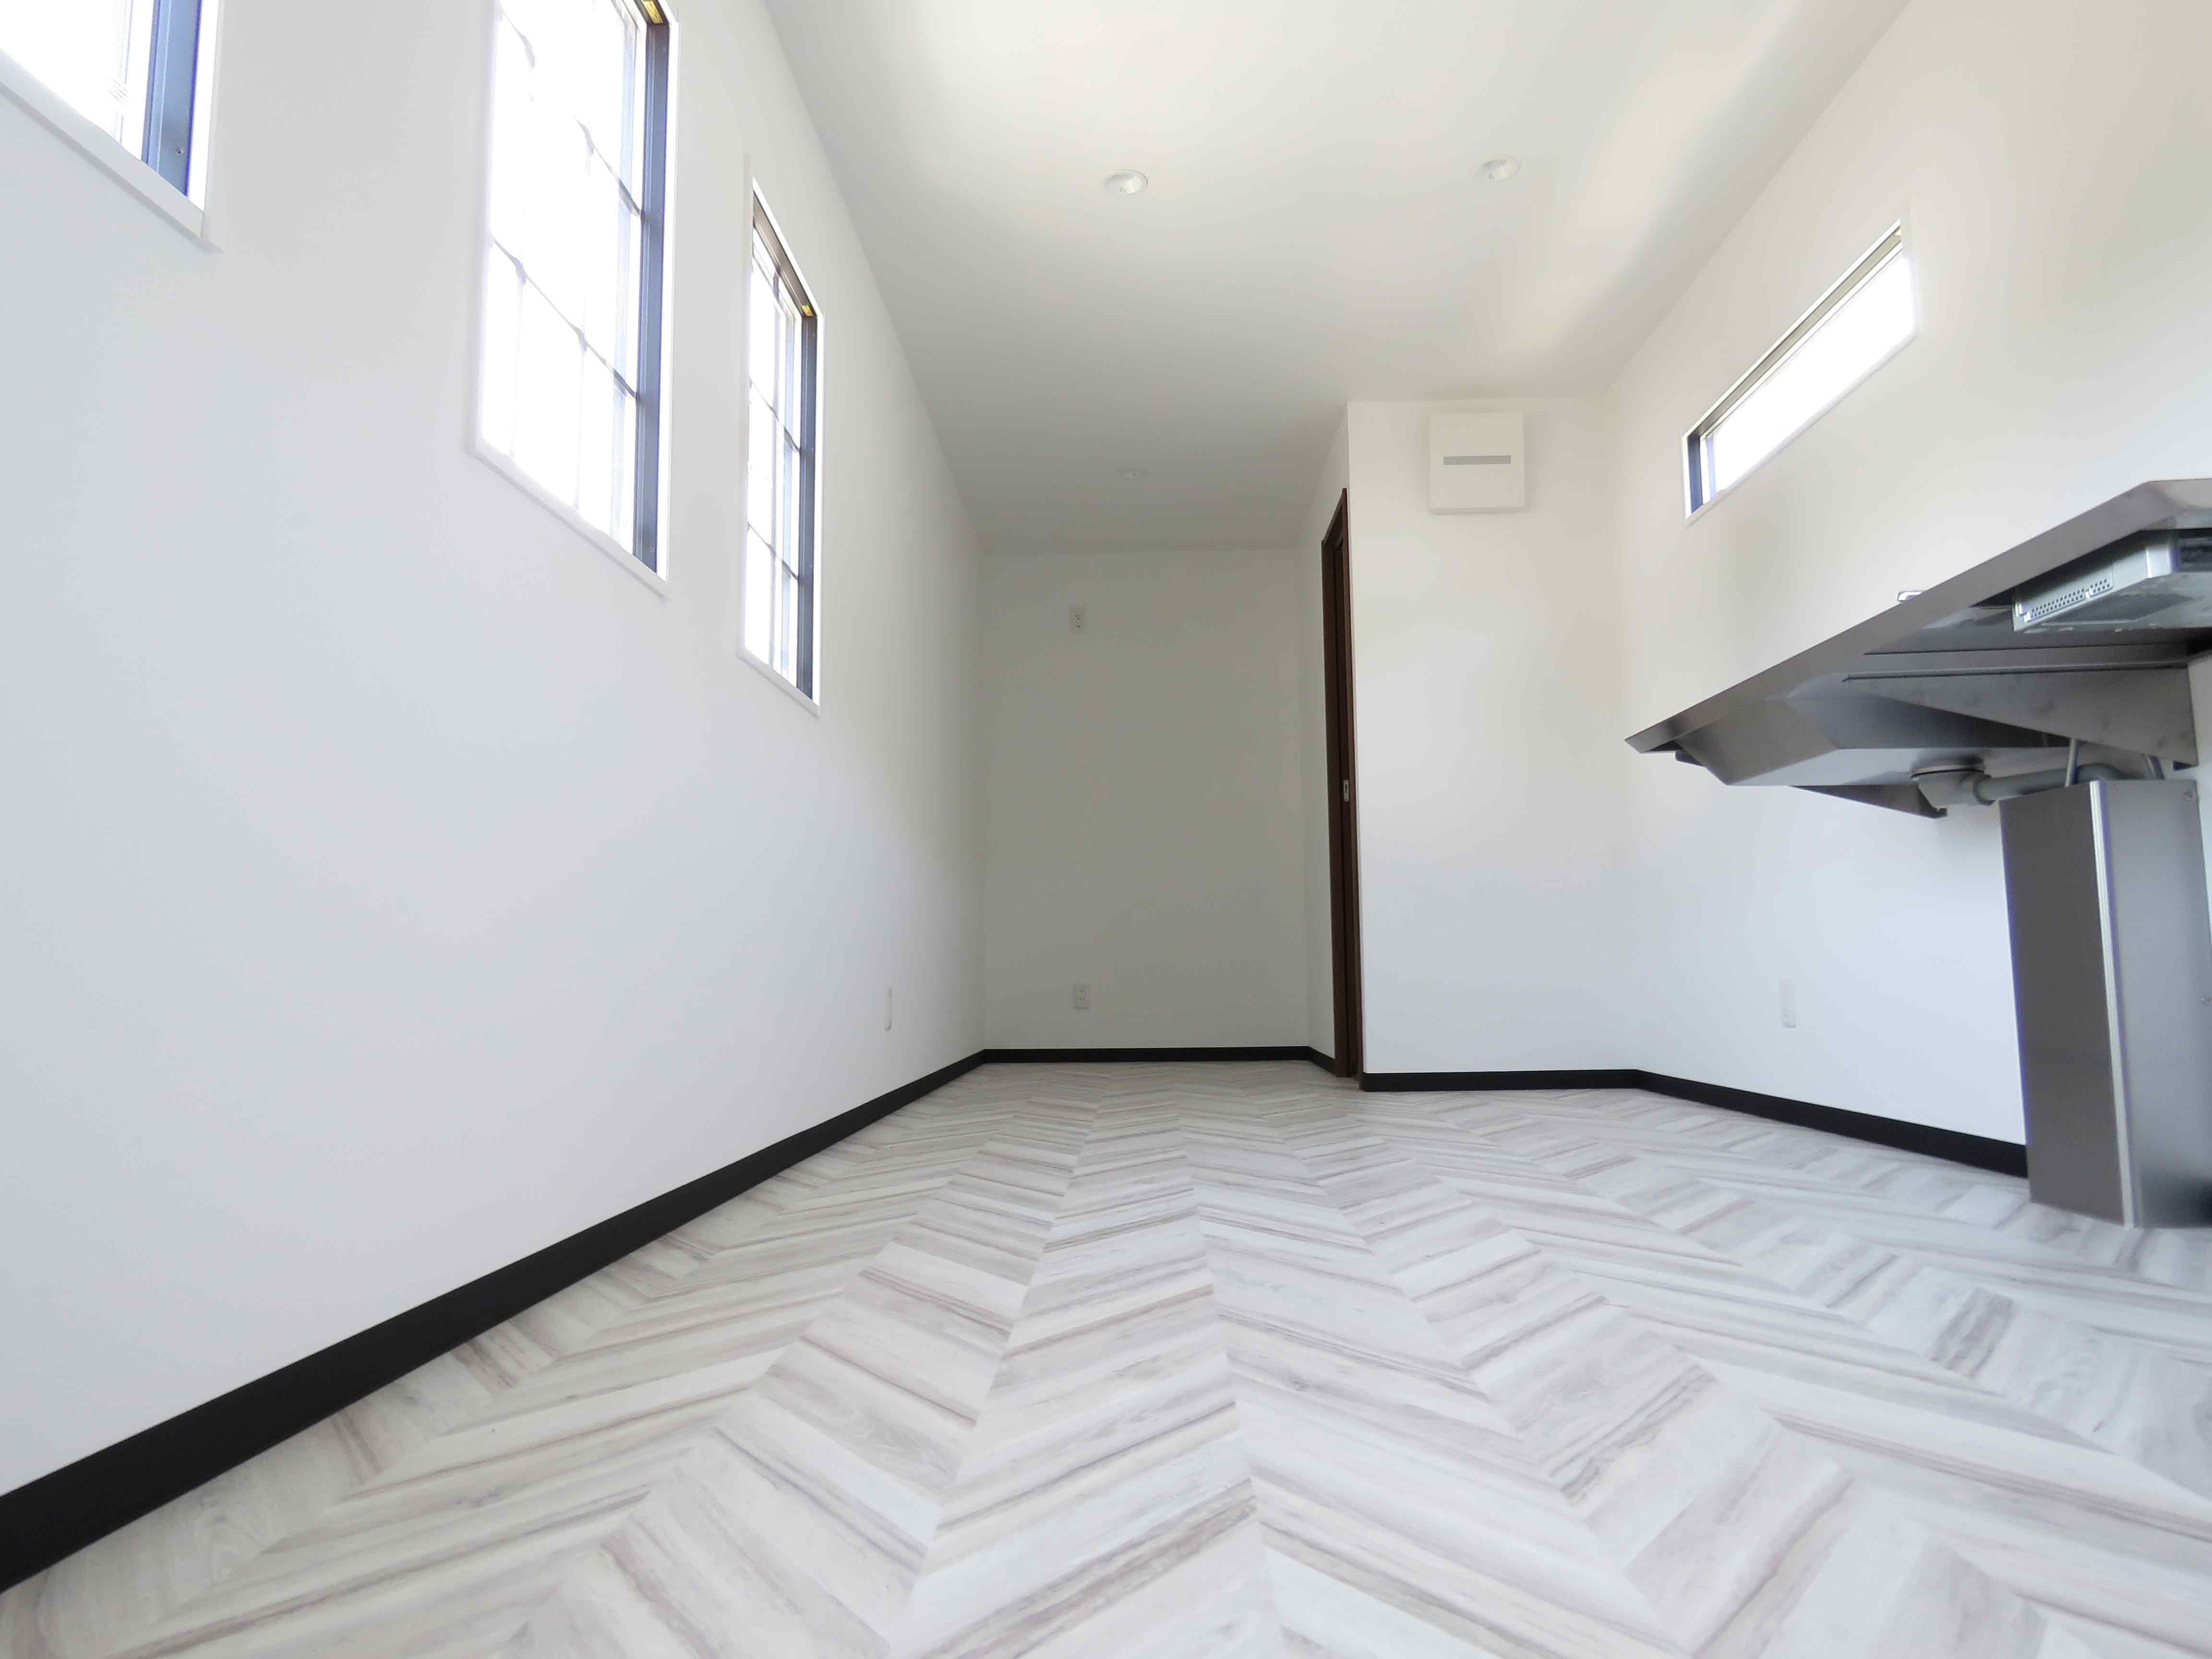 事務所タイプトレーラーハウス内装①　白を基調としており広々とした空間が広がります。